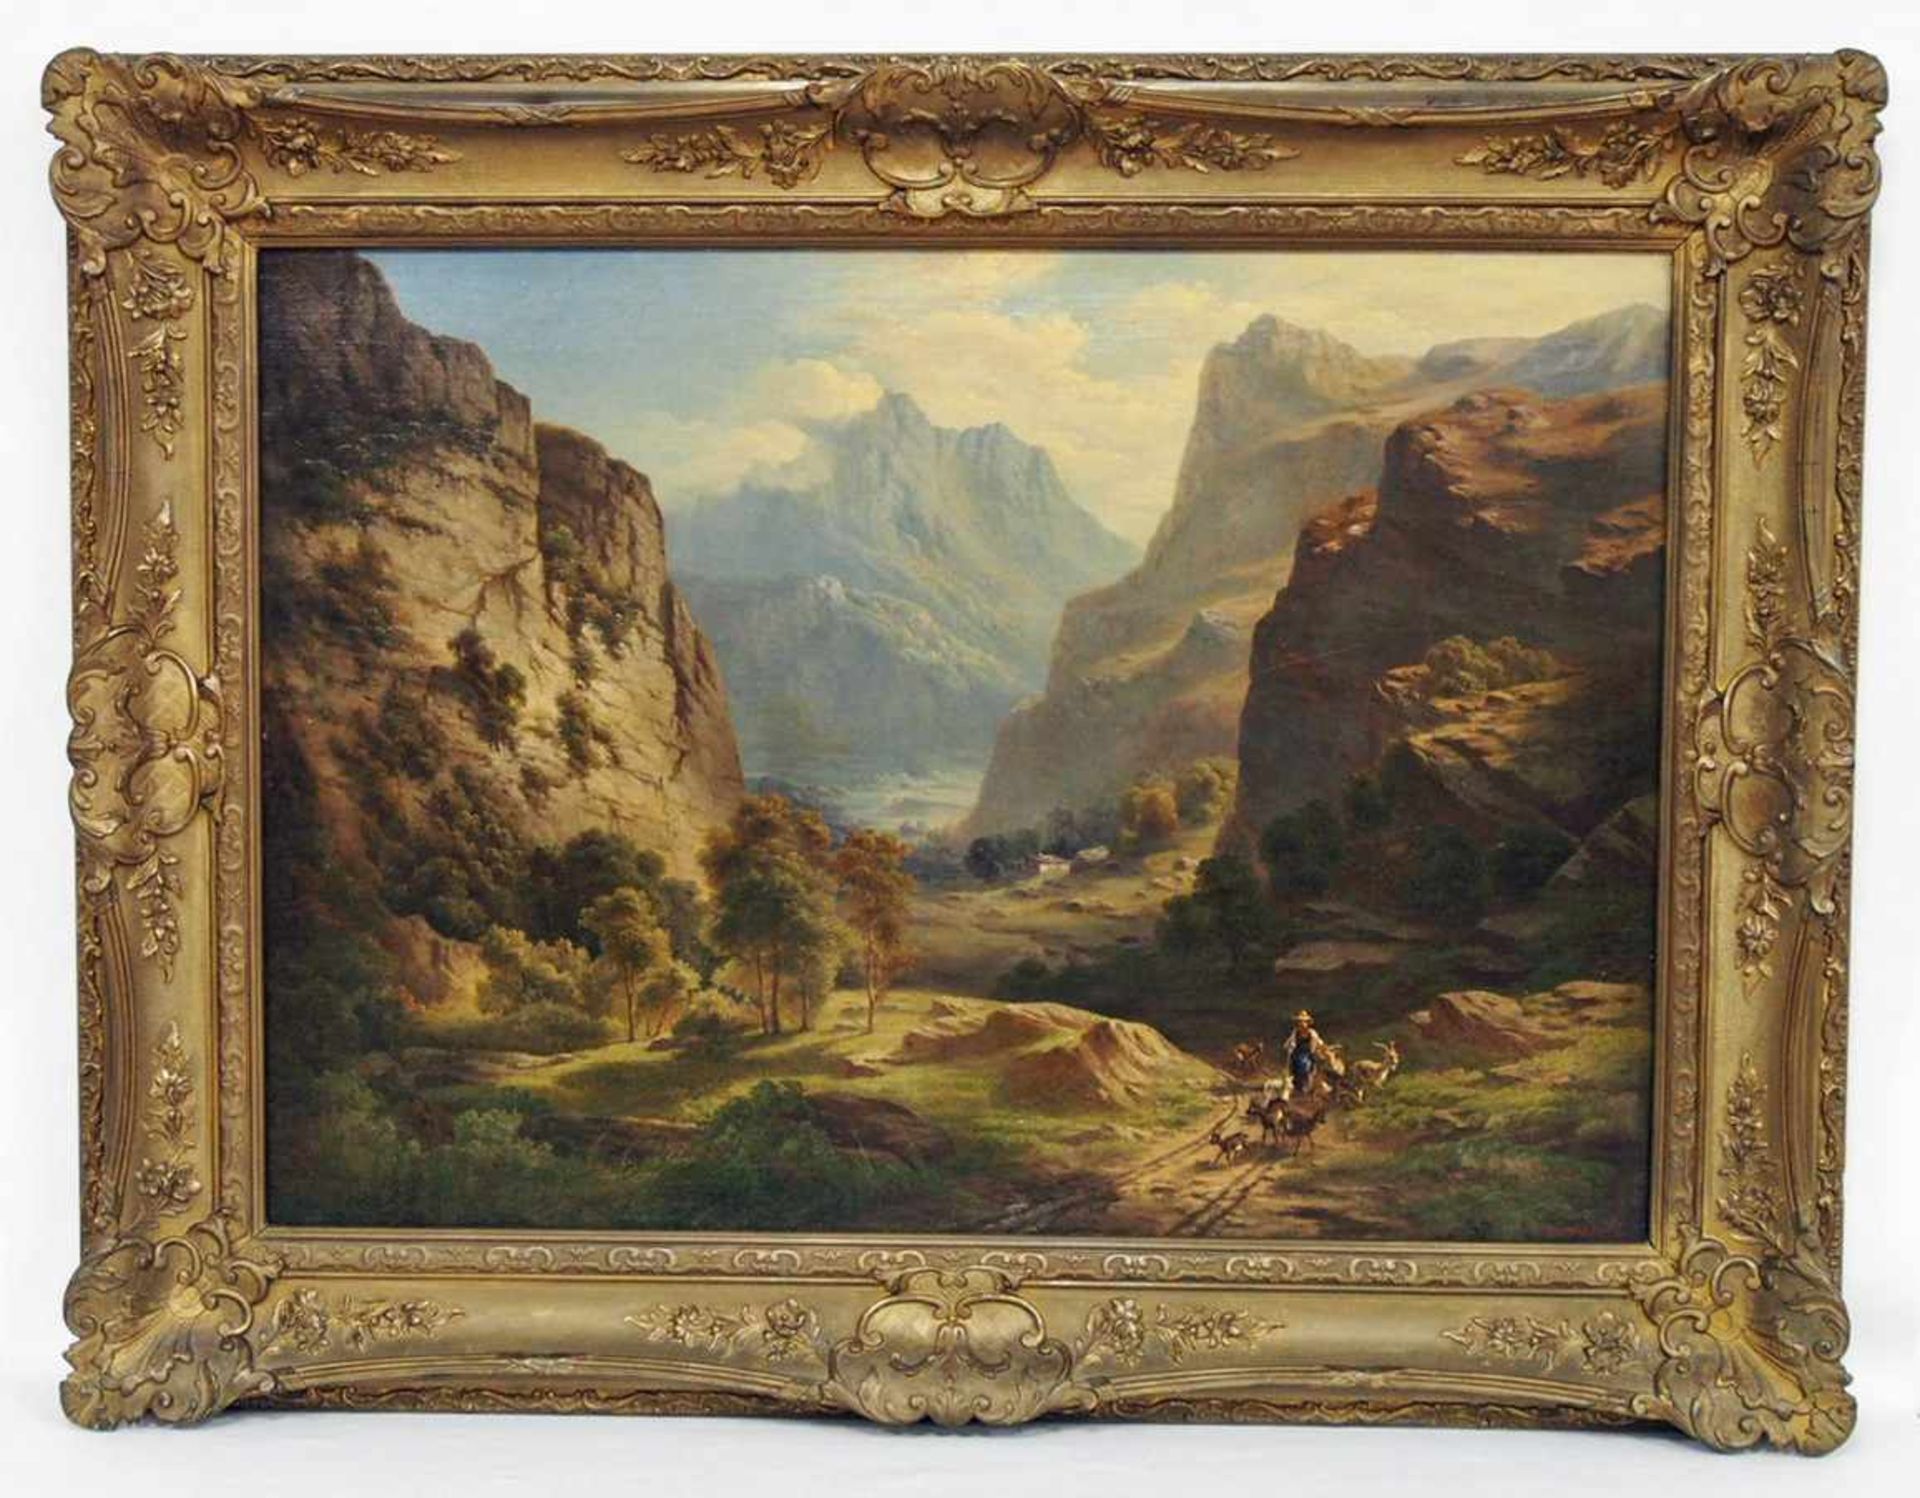 BERNARDI, Joseph1826-1907Im Berner OberlandÖl auf Leinwand, signiert unten rechts, 53 x 88 cm, - Bild 2 aus 3